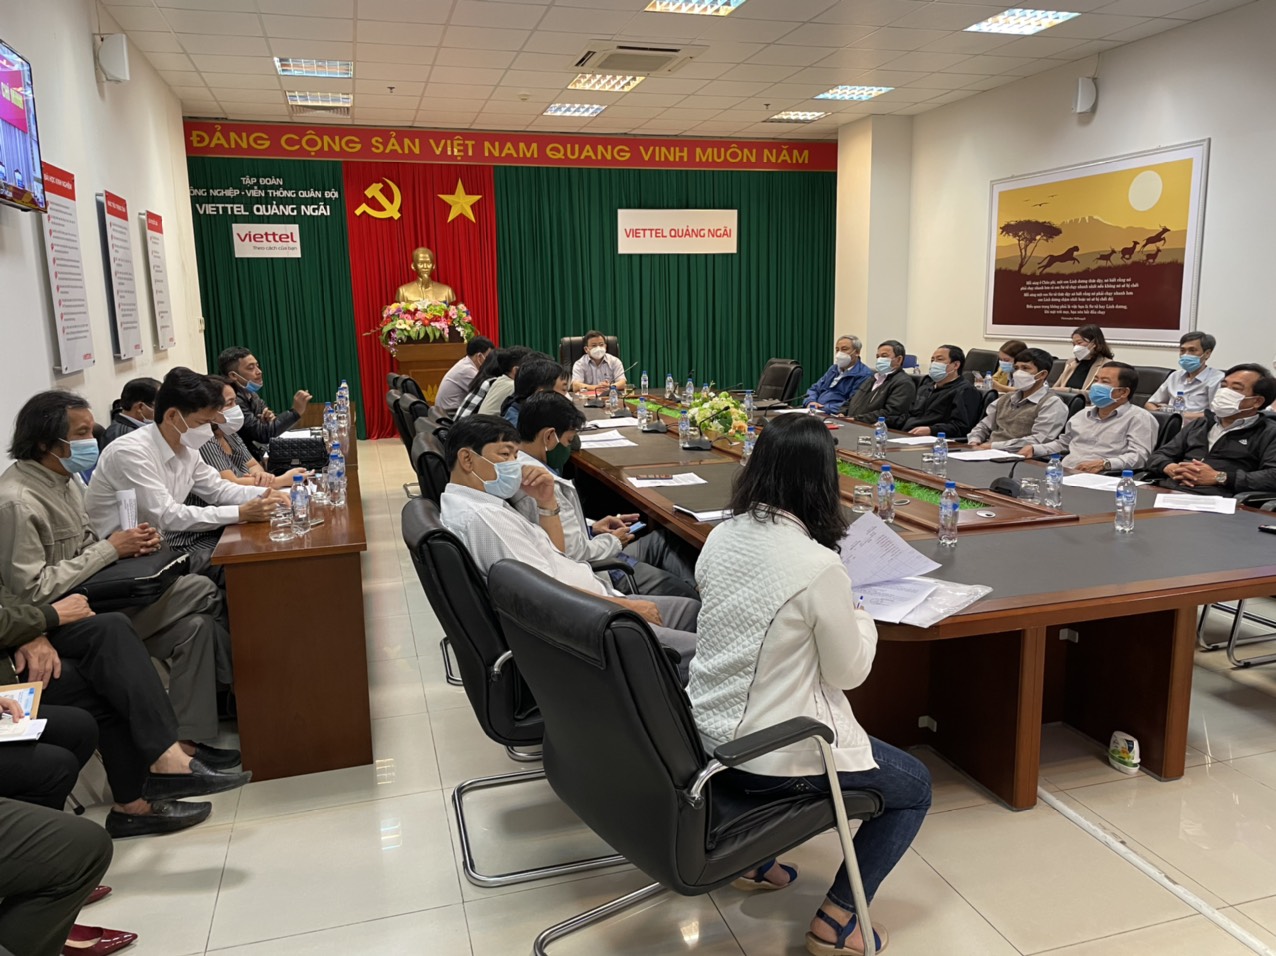 UBND thành phố Quảng Ngãi chỉ đạo chủ động triển khai công tác phòng, chống dịch Covid-19 trong thời gian trước, trong và sau Tết nguyên đán Nhâm Dần